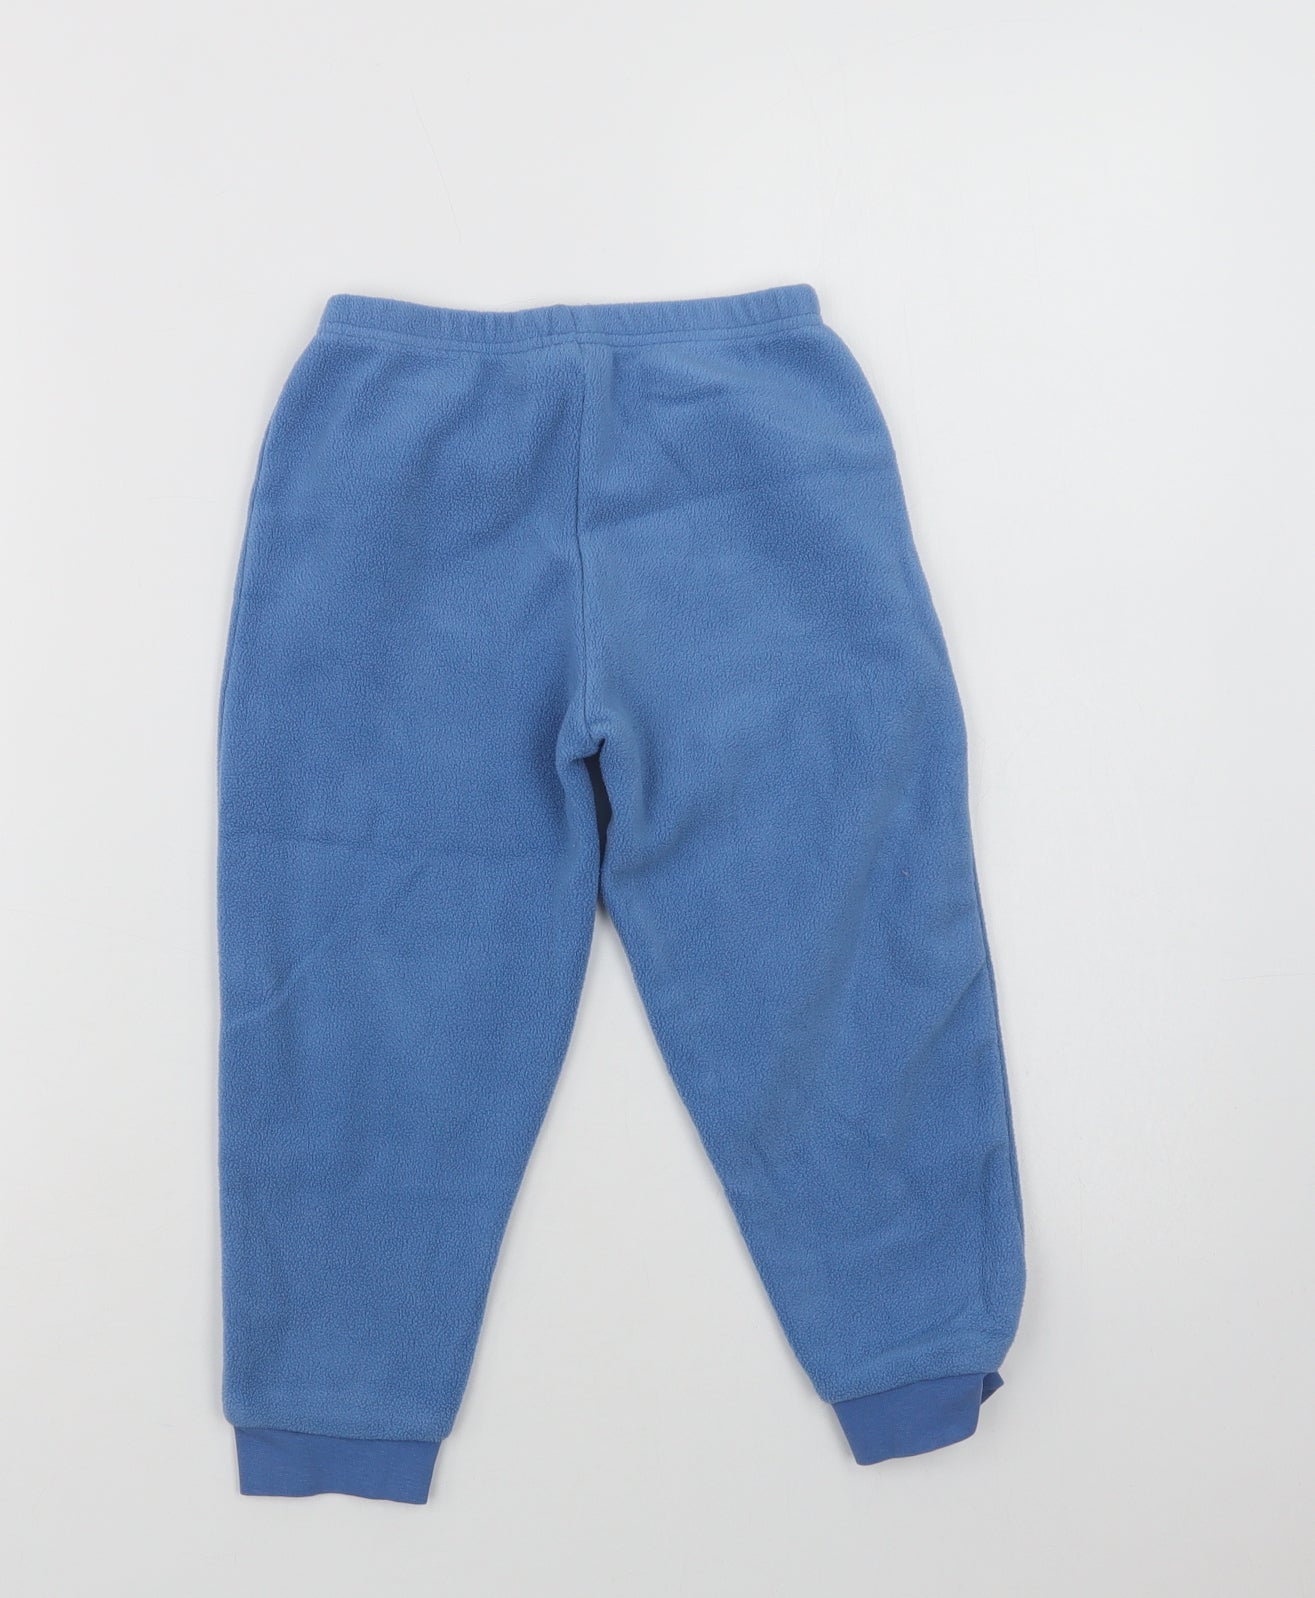 Lupilu Girls Blue  Polyester  Pyjama Pants Size 3-4 Years